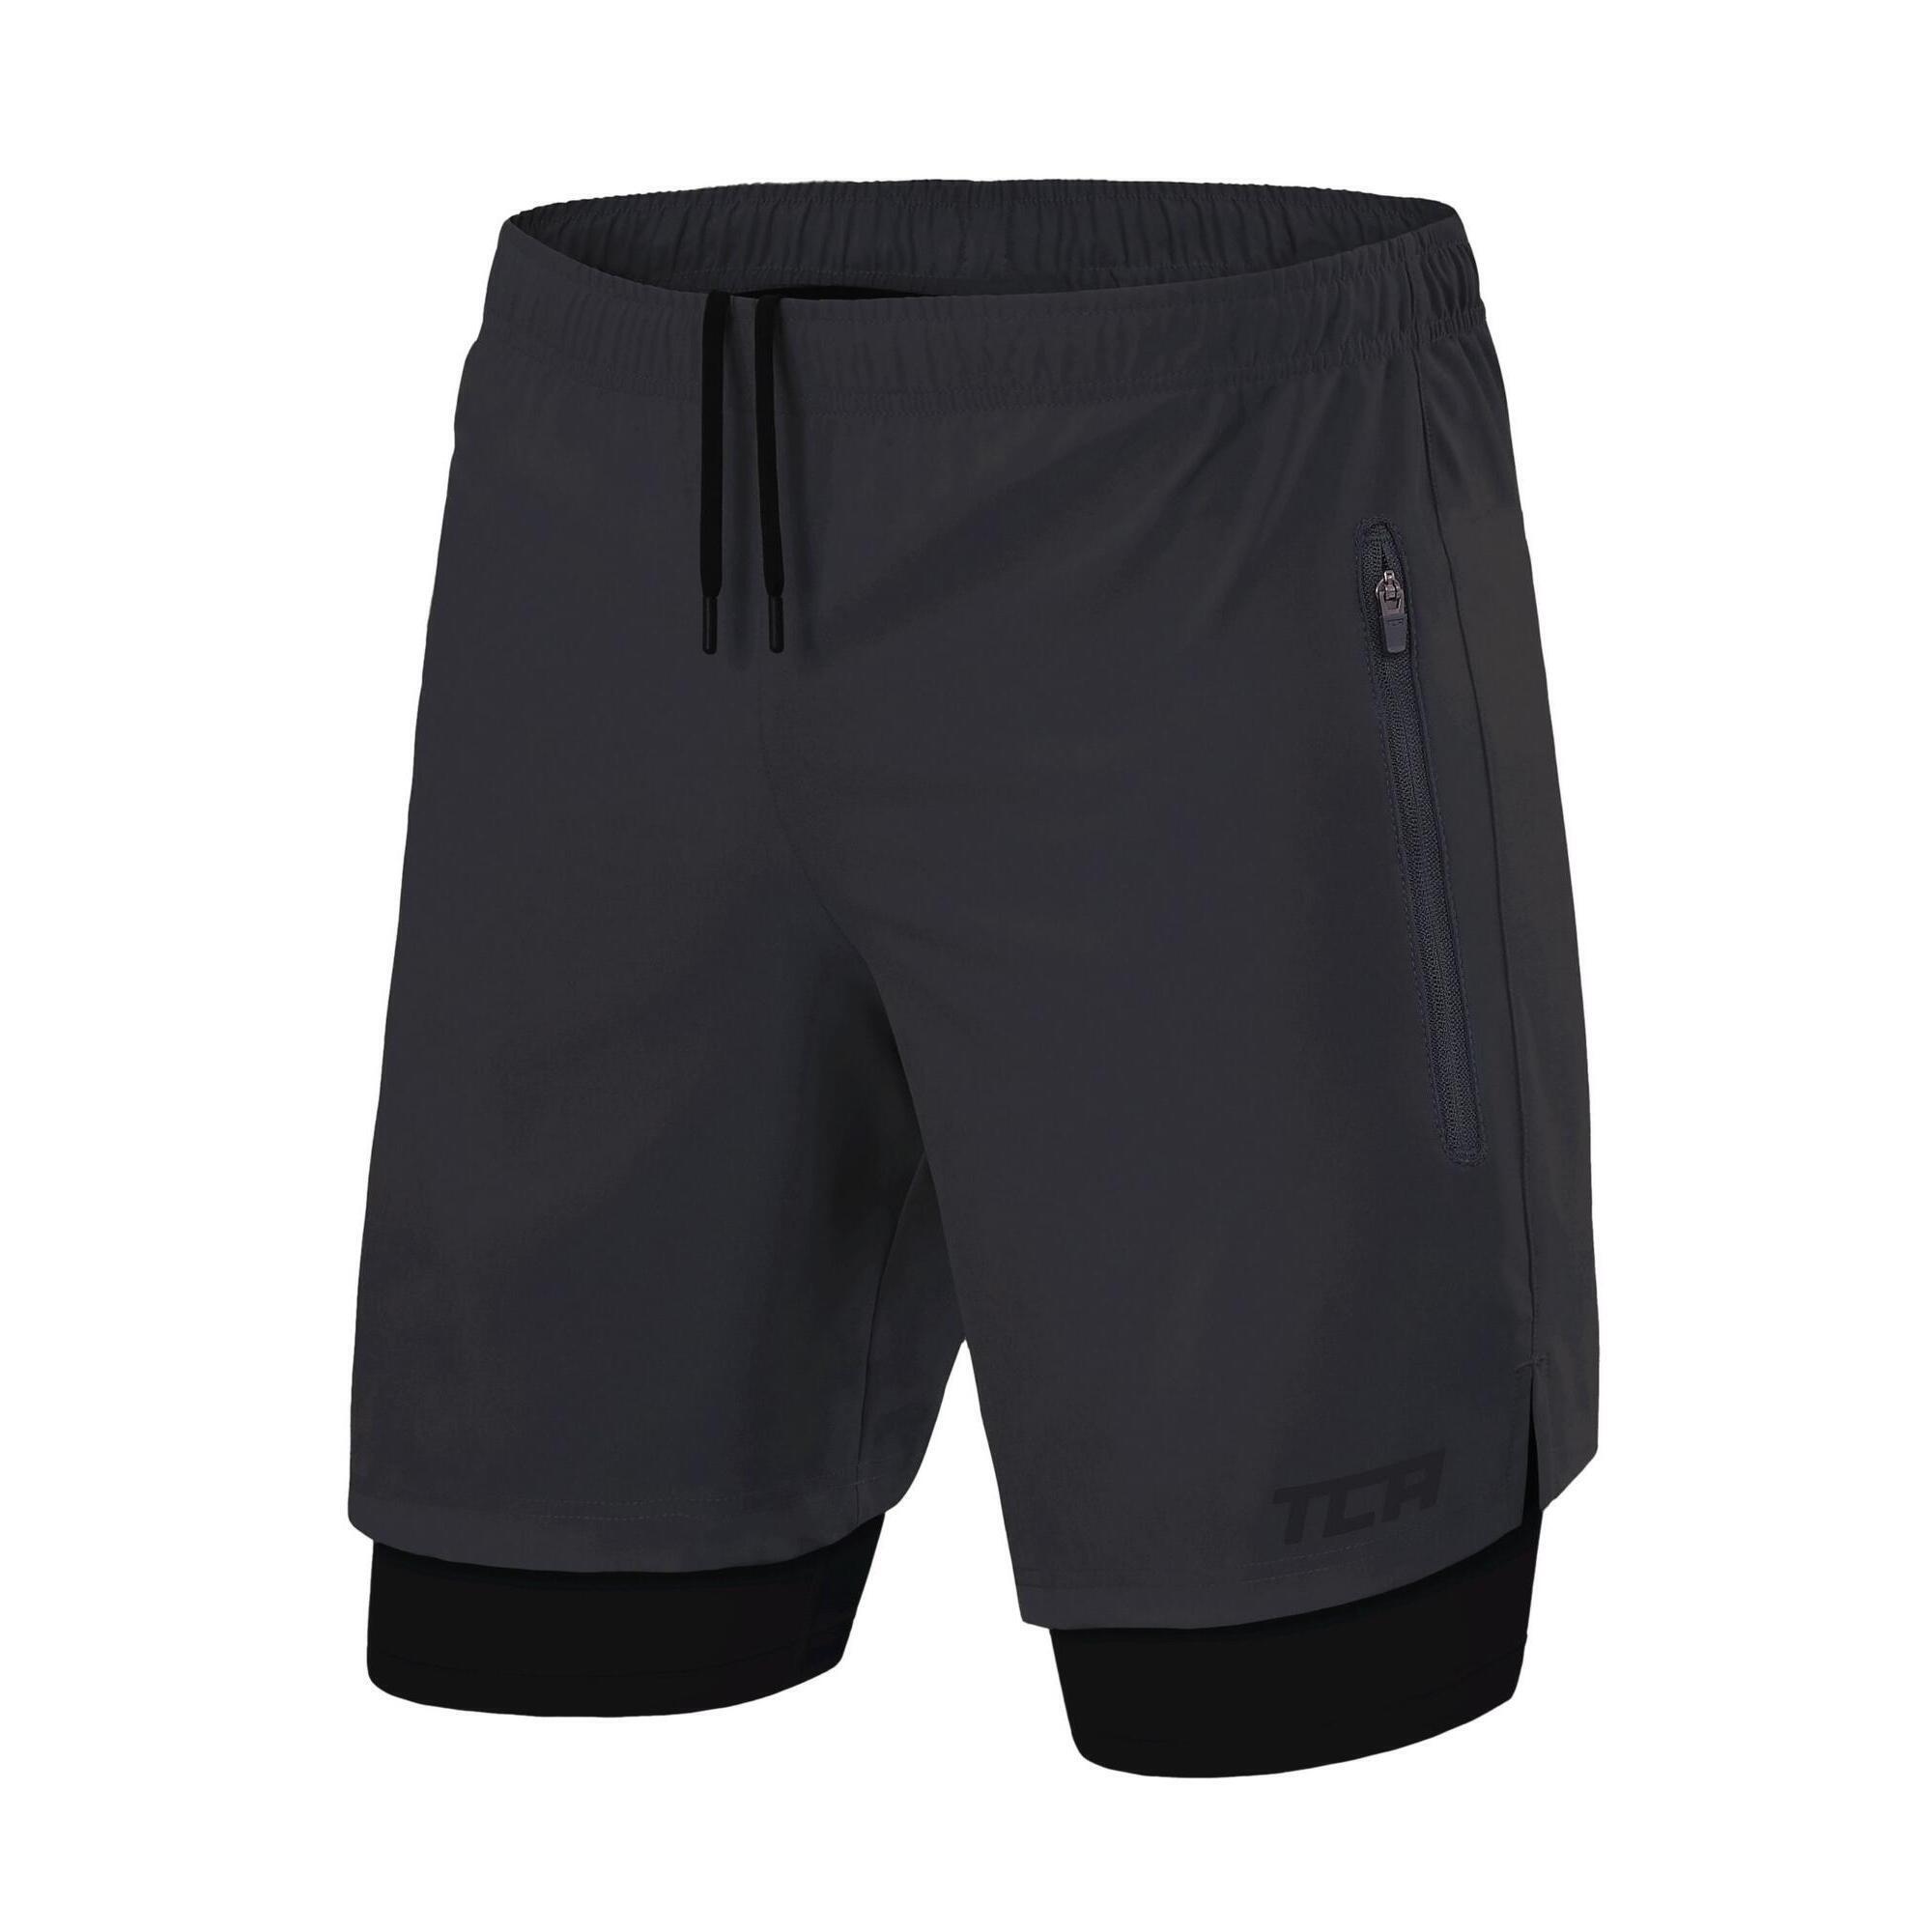 TCA Men's Ultra 2-in-1 Running Shorts with Zip Pockets - Asphalt